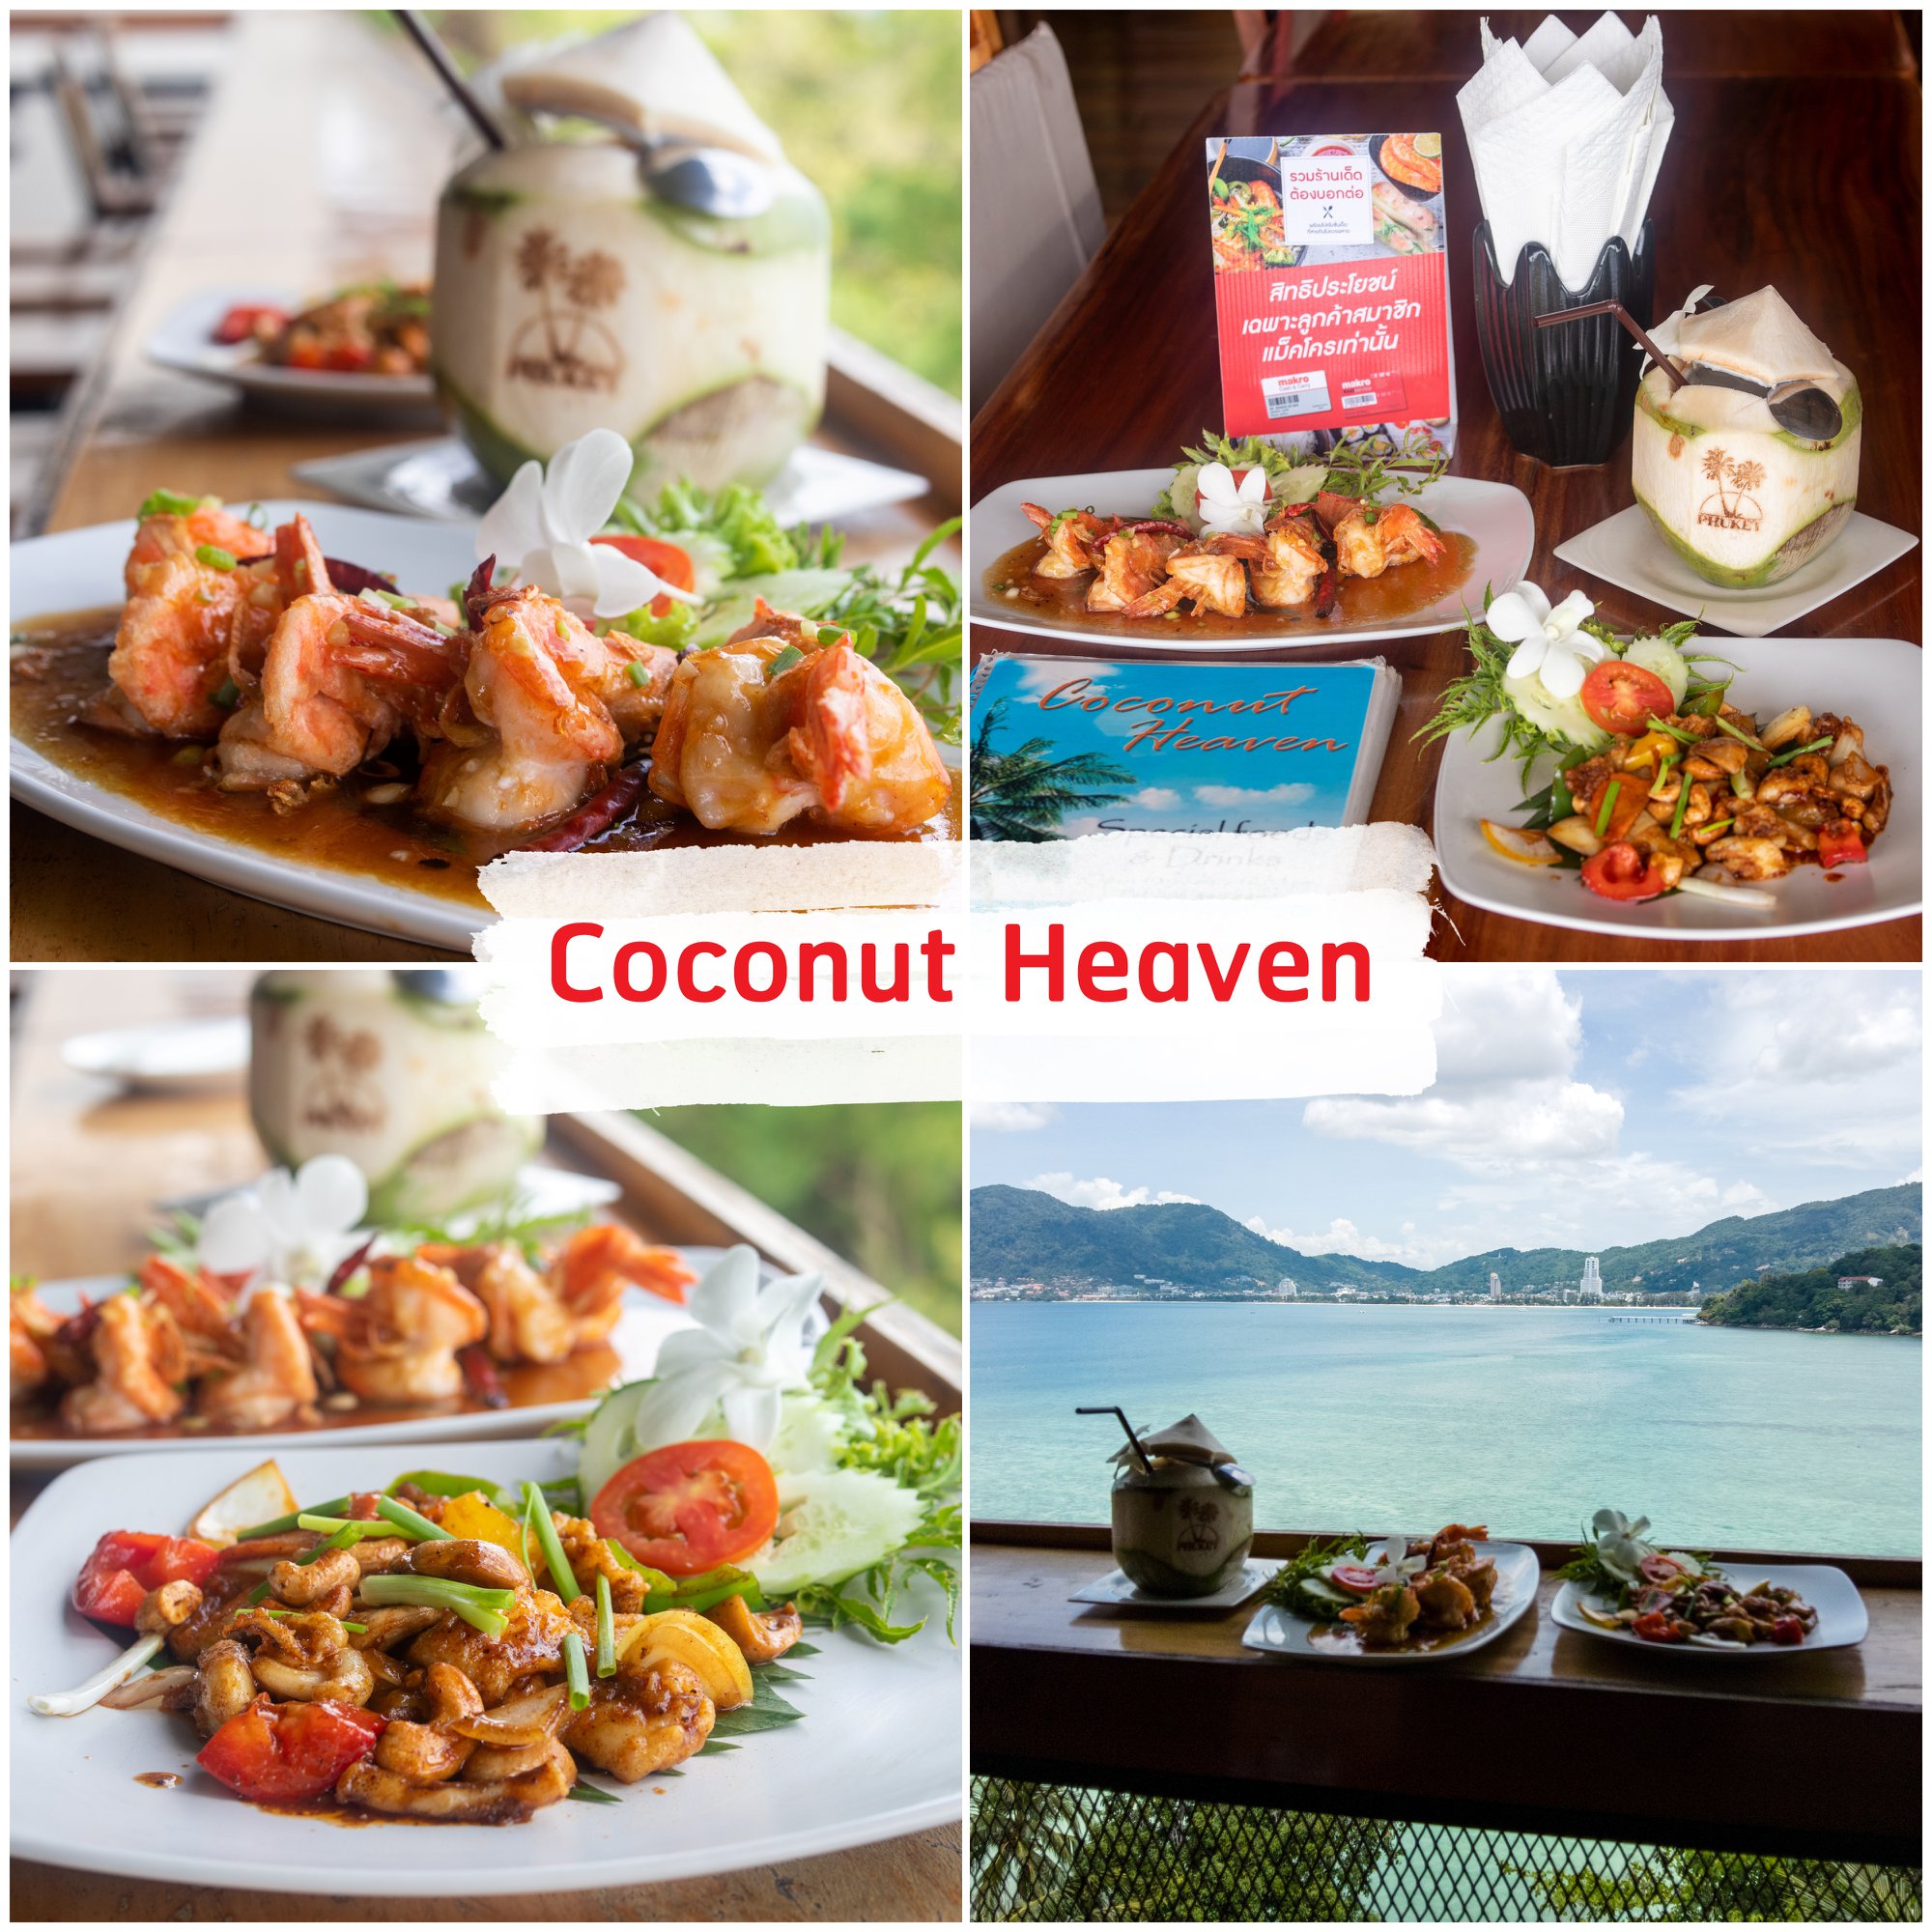 Coconut-Heaven-ป่าตอง -ที่สุดแห่งร้านอาหารวิวหลักล้าน-ที่ใช้-Coconut-หรือมะพร้าวเป็นซิกเนเจอร์หลักของร้าน-ใน-Concept-ชมทะเล-จิบน้ำมะพร้าวชิวๆ
ด้วยจุดเด่นของร้านที่วิวสวยมองได้-180องศาทั้งป่าตอง-อาหารก็อร่อยน้าา-แอดแนะนำ-น้ำพริกกุ้งสด--ทำที่ต่อที่--,แกงส้มเครื่องสูตรทางร้าน-และน้ำมะพร้าวอ่อนสดจากแม็คโคร-บอกเลยว่าเด็ด
วิวนี้สวยจริงๆ-ทั้งเช้า-สาย-บ่ายเย็น-แถมตอนนี้น้ำใสมวากๆ-เลยยครับ-ต้องมาน้าา ภูเก็ต,ร้านอาหารภูเก็ต,ร้านอร่อยภูเก็ต